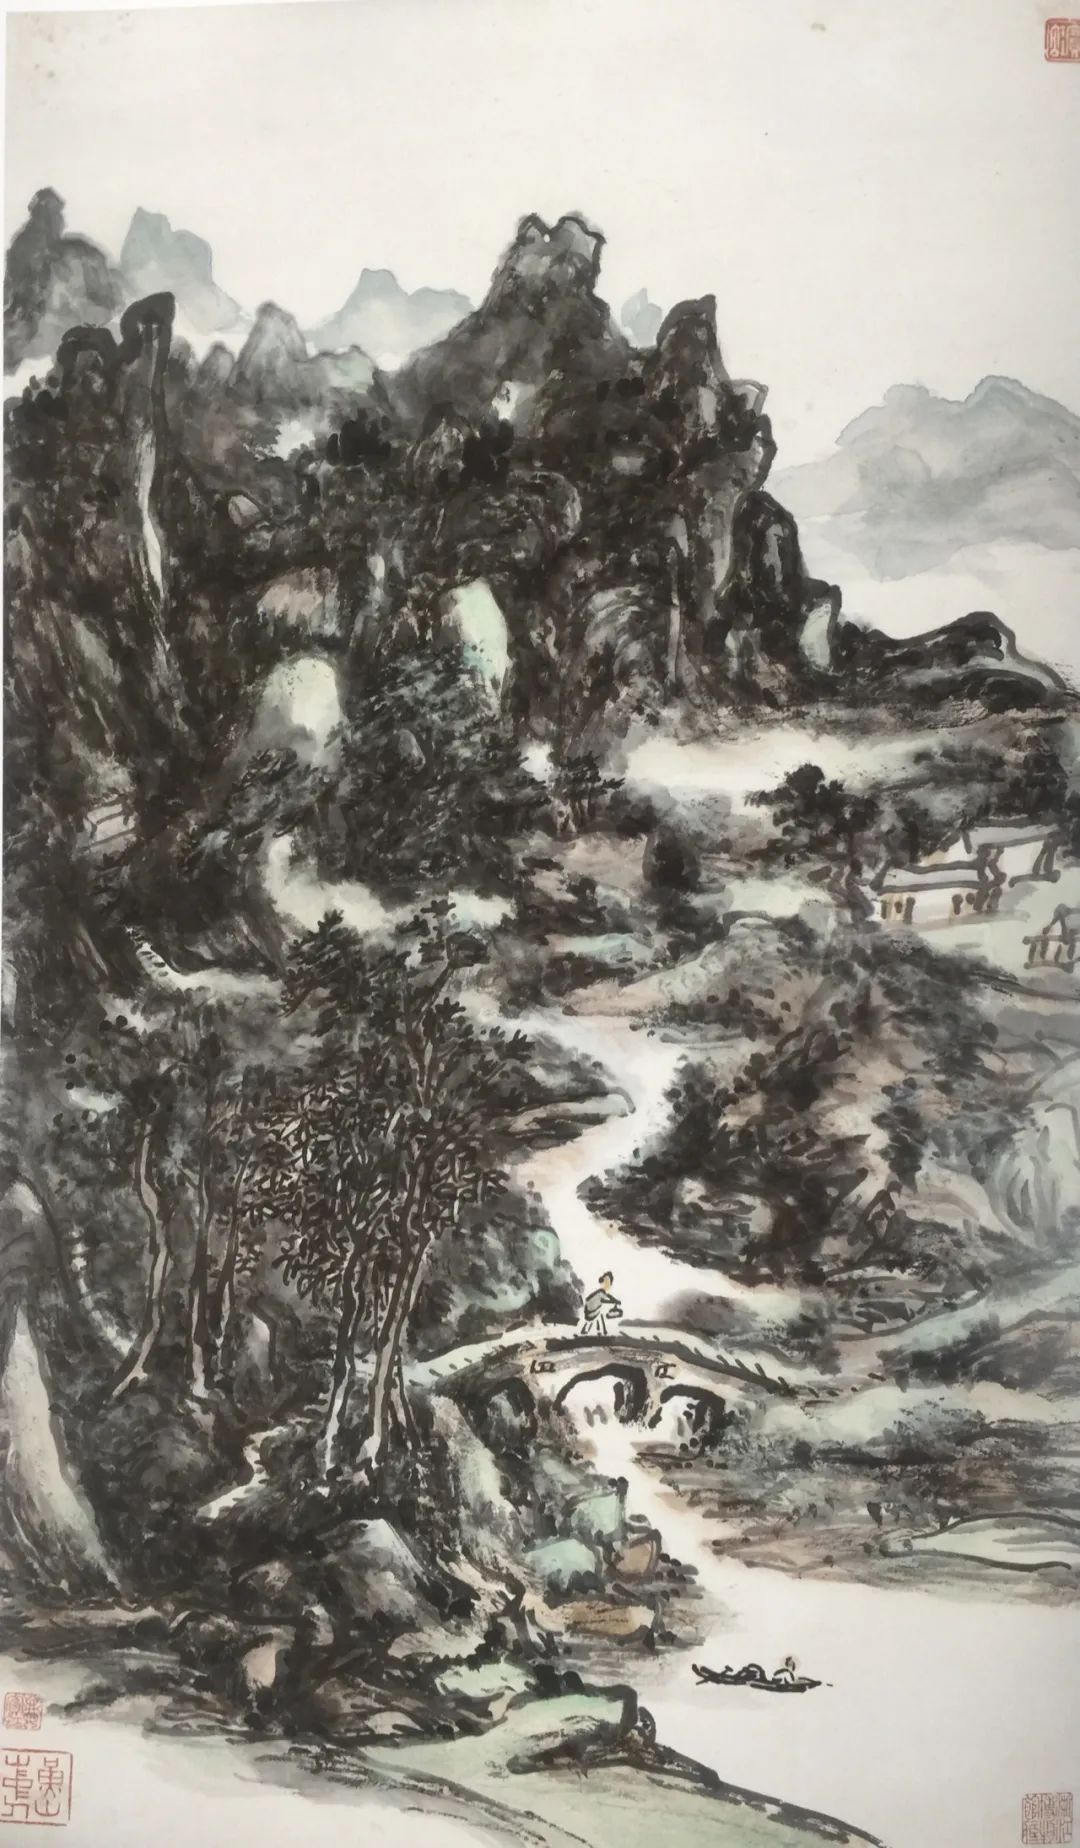 合天地自然   安民族灵魂——著名画家张志民解读黄宾虹的山水画